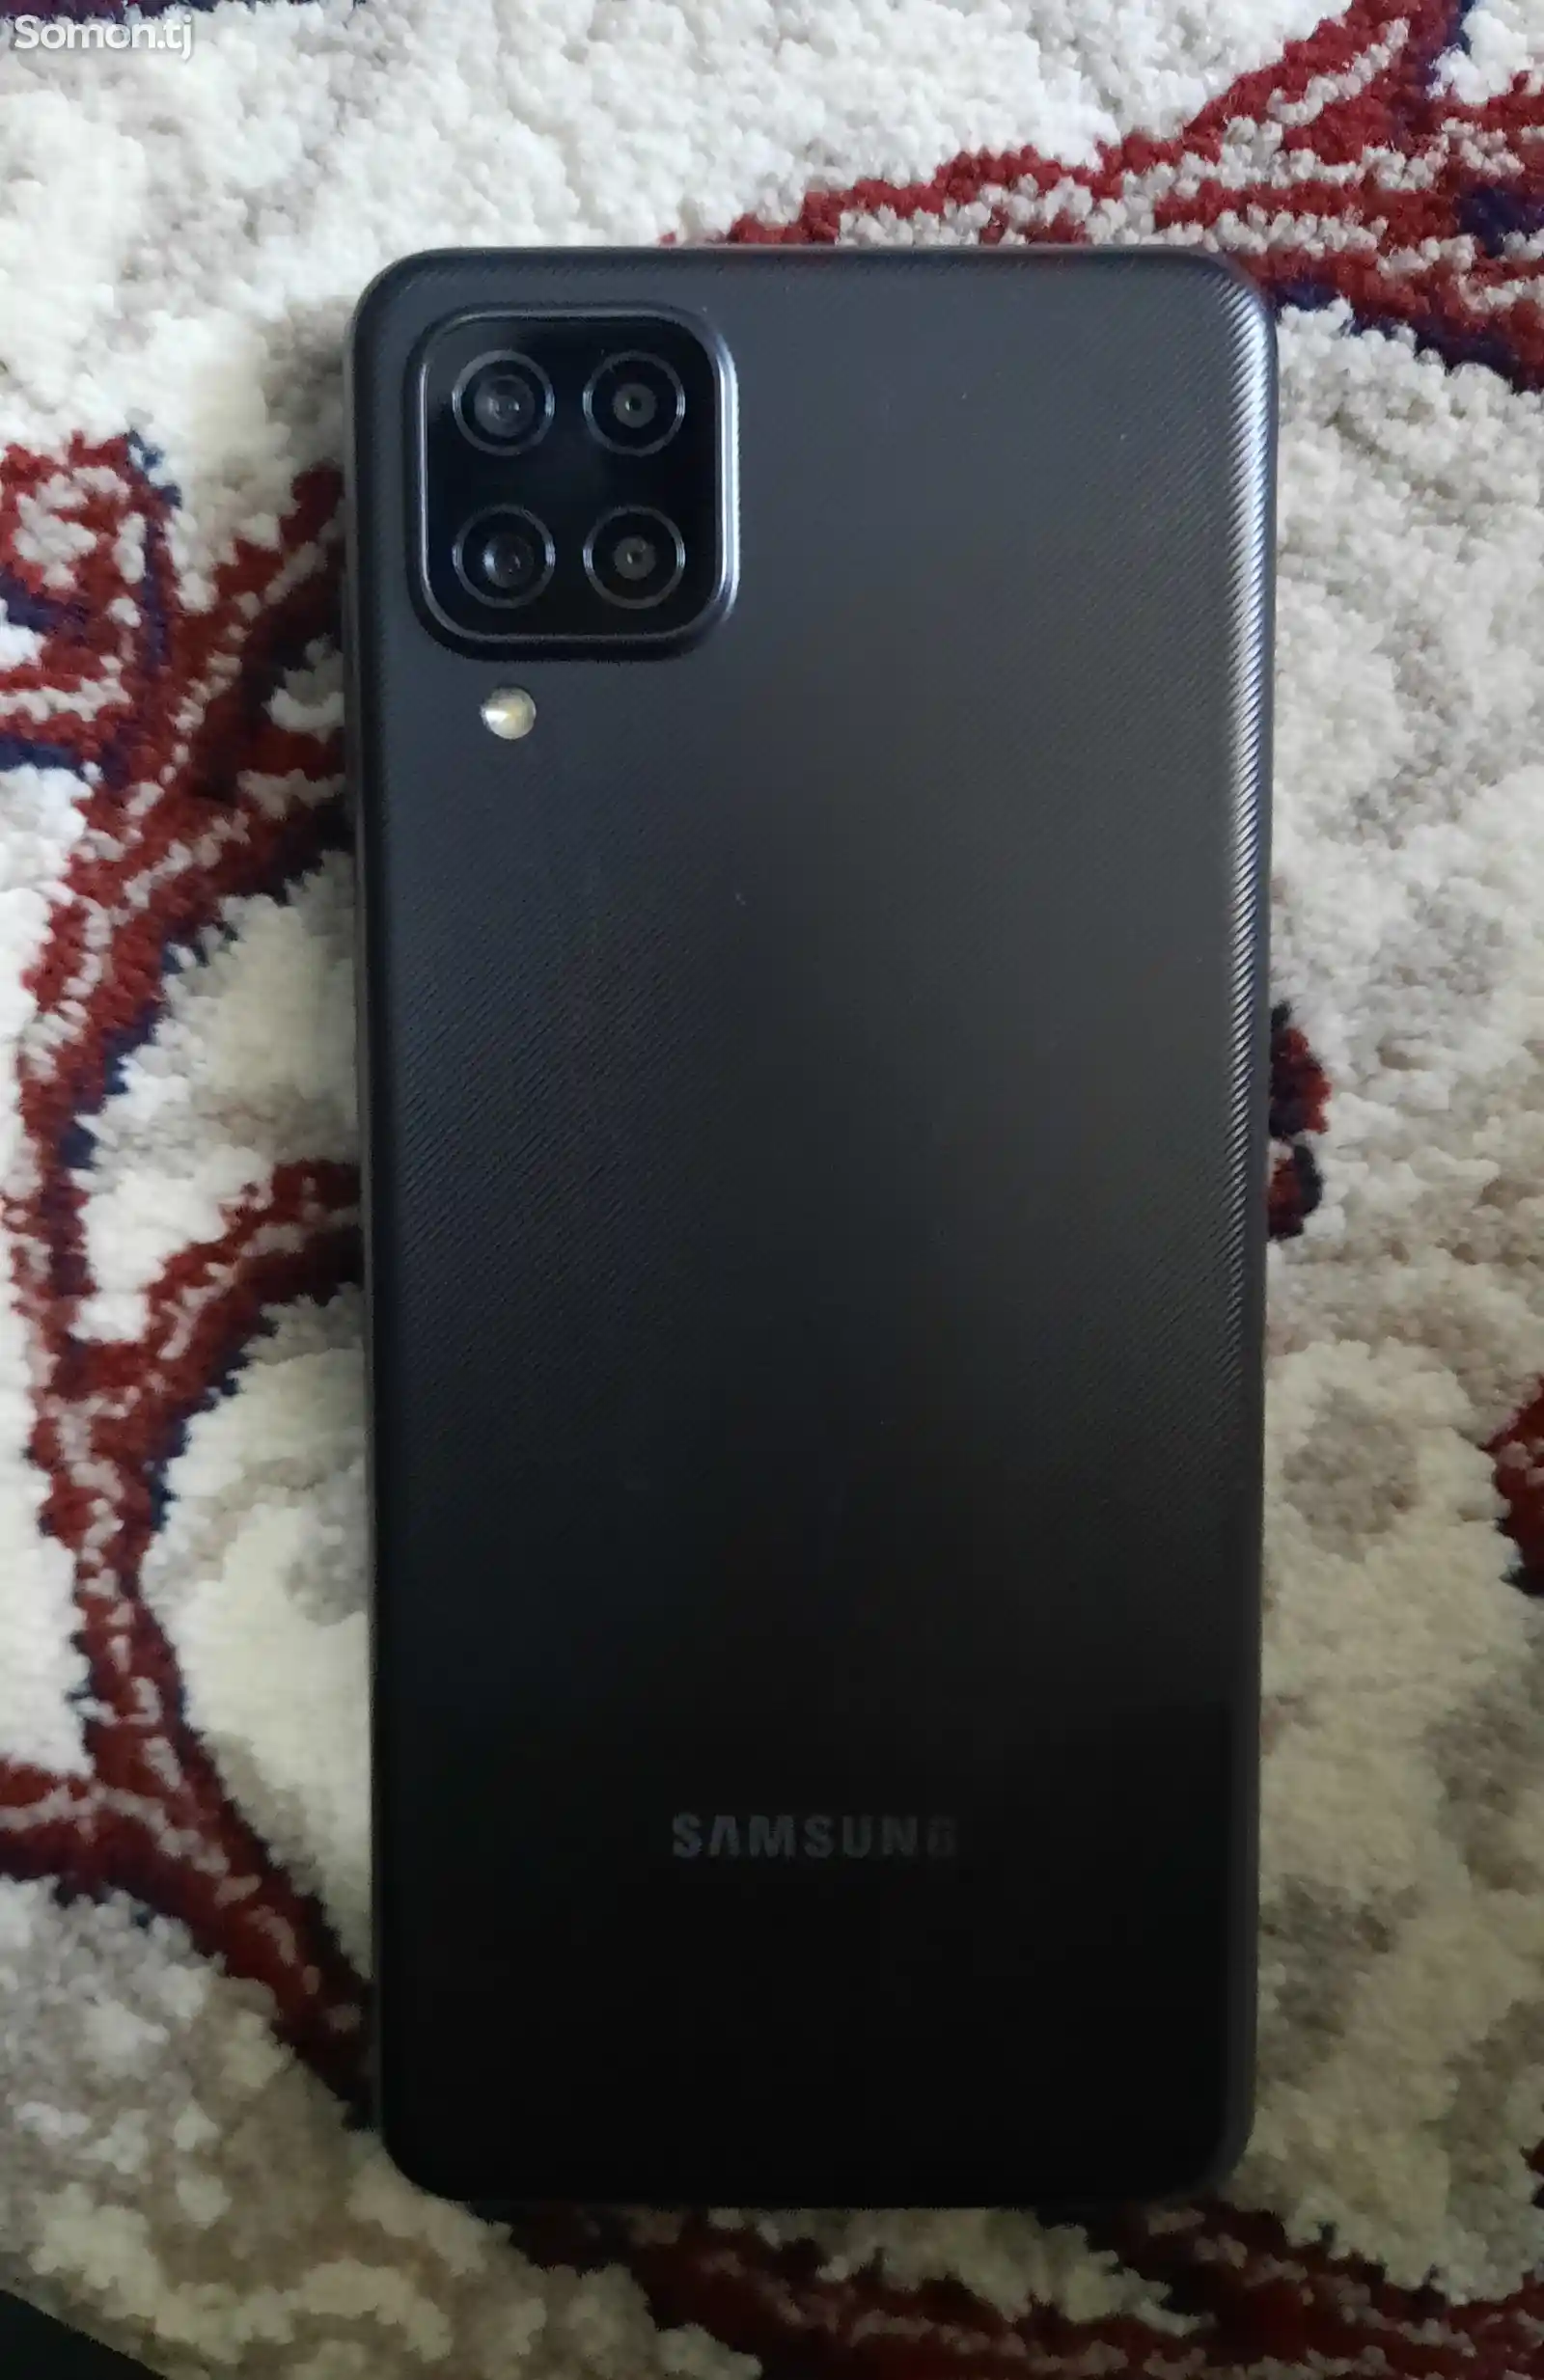 Samsung Galaxy A12-1